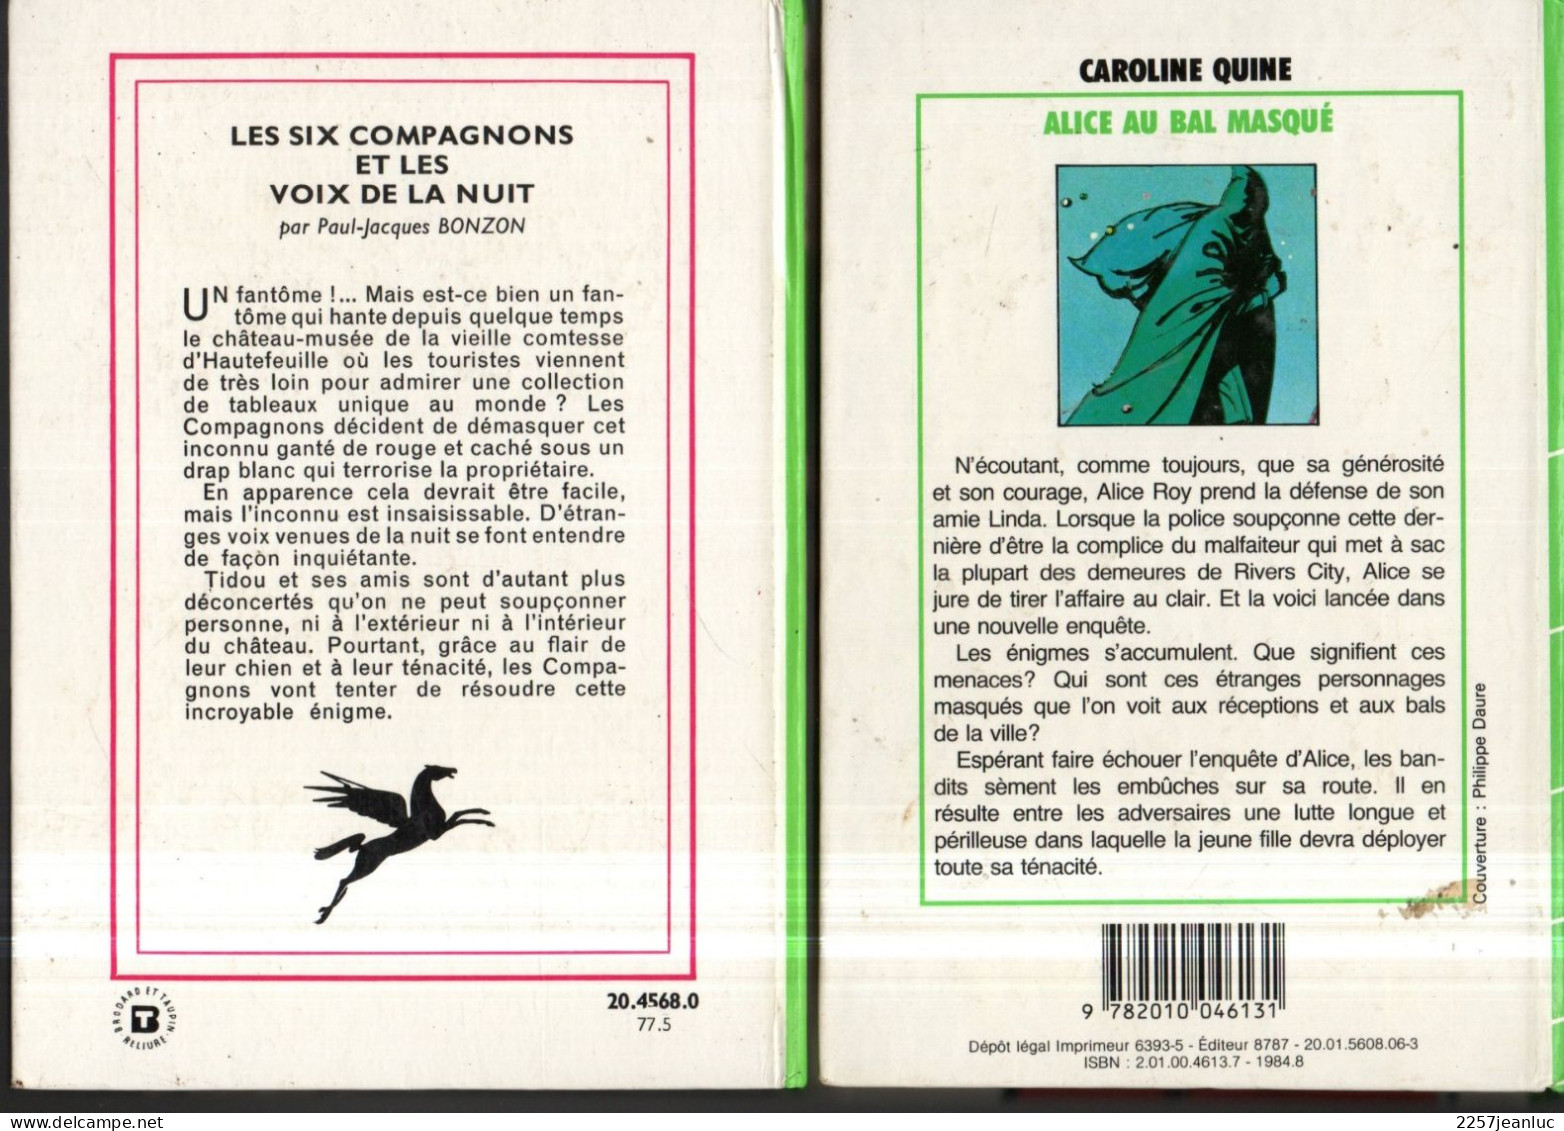 Lot 3 Livres * Le Secret De L'etalon Noir *Alice Au Bal Masqué & Les Six Compagnons Et Les Voix De La Nuit - Bibliothèque Verte